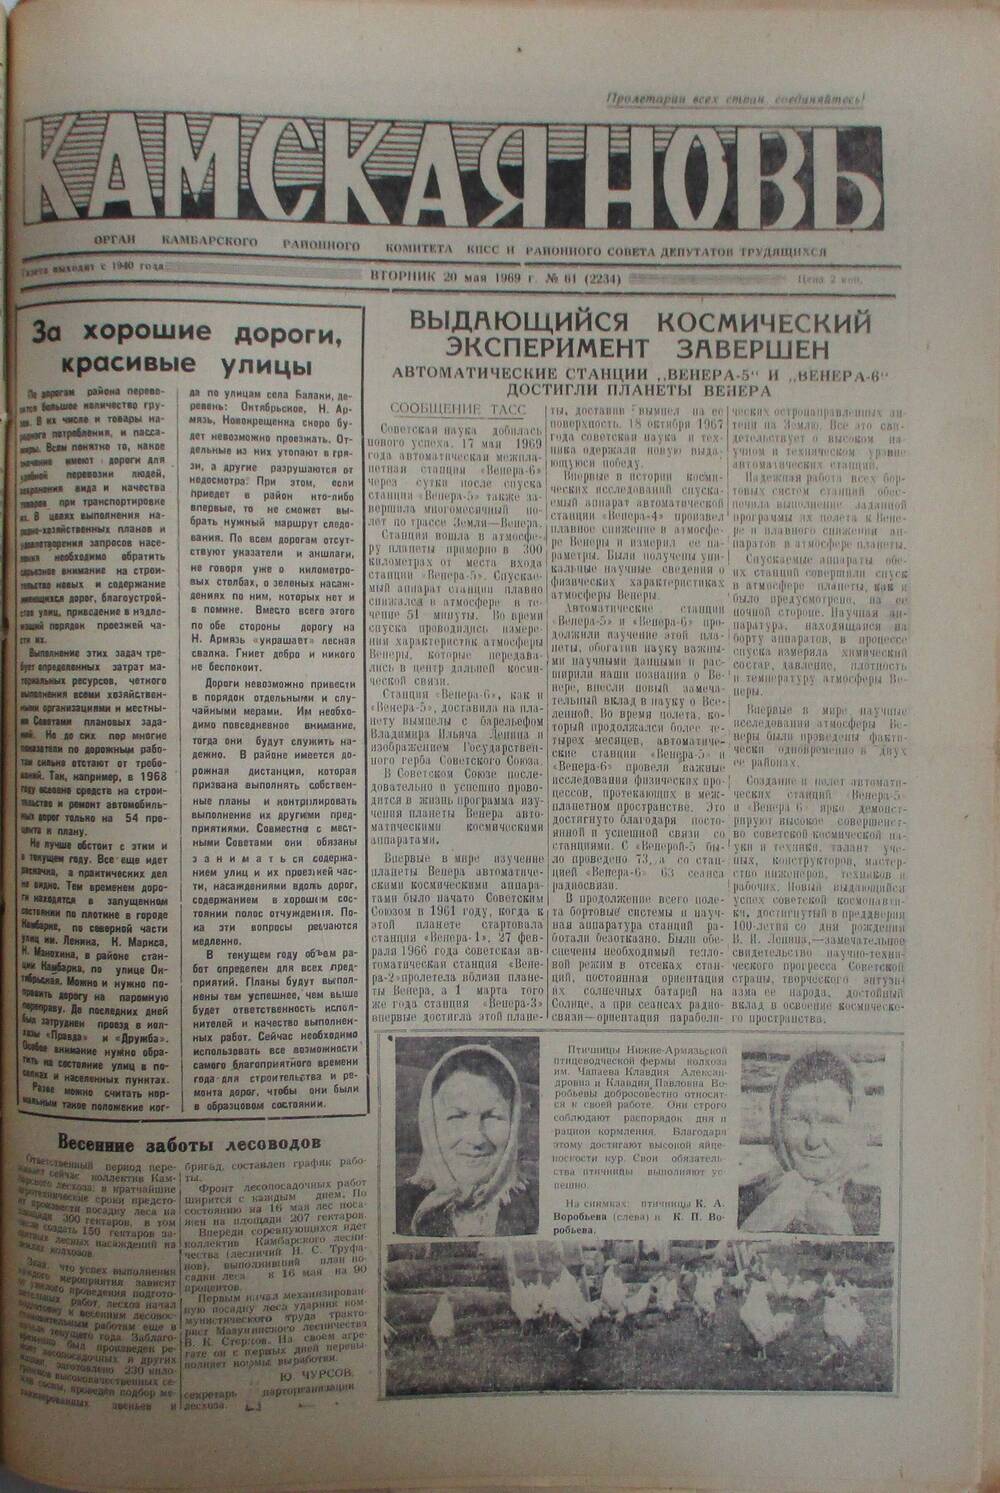 Газеты Камская новь за 1969 год, орган Камбарского райсовета и  РККПСС, с №1 по №66, с №68 по №156. №61.